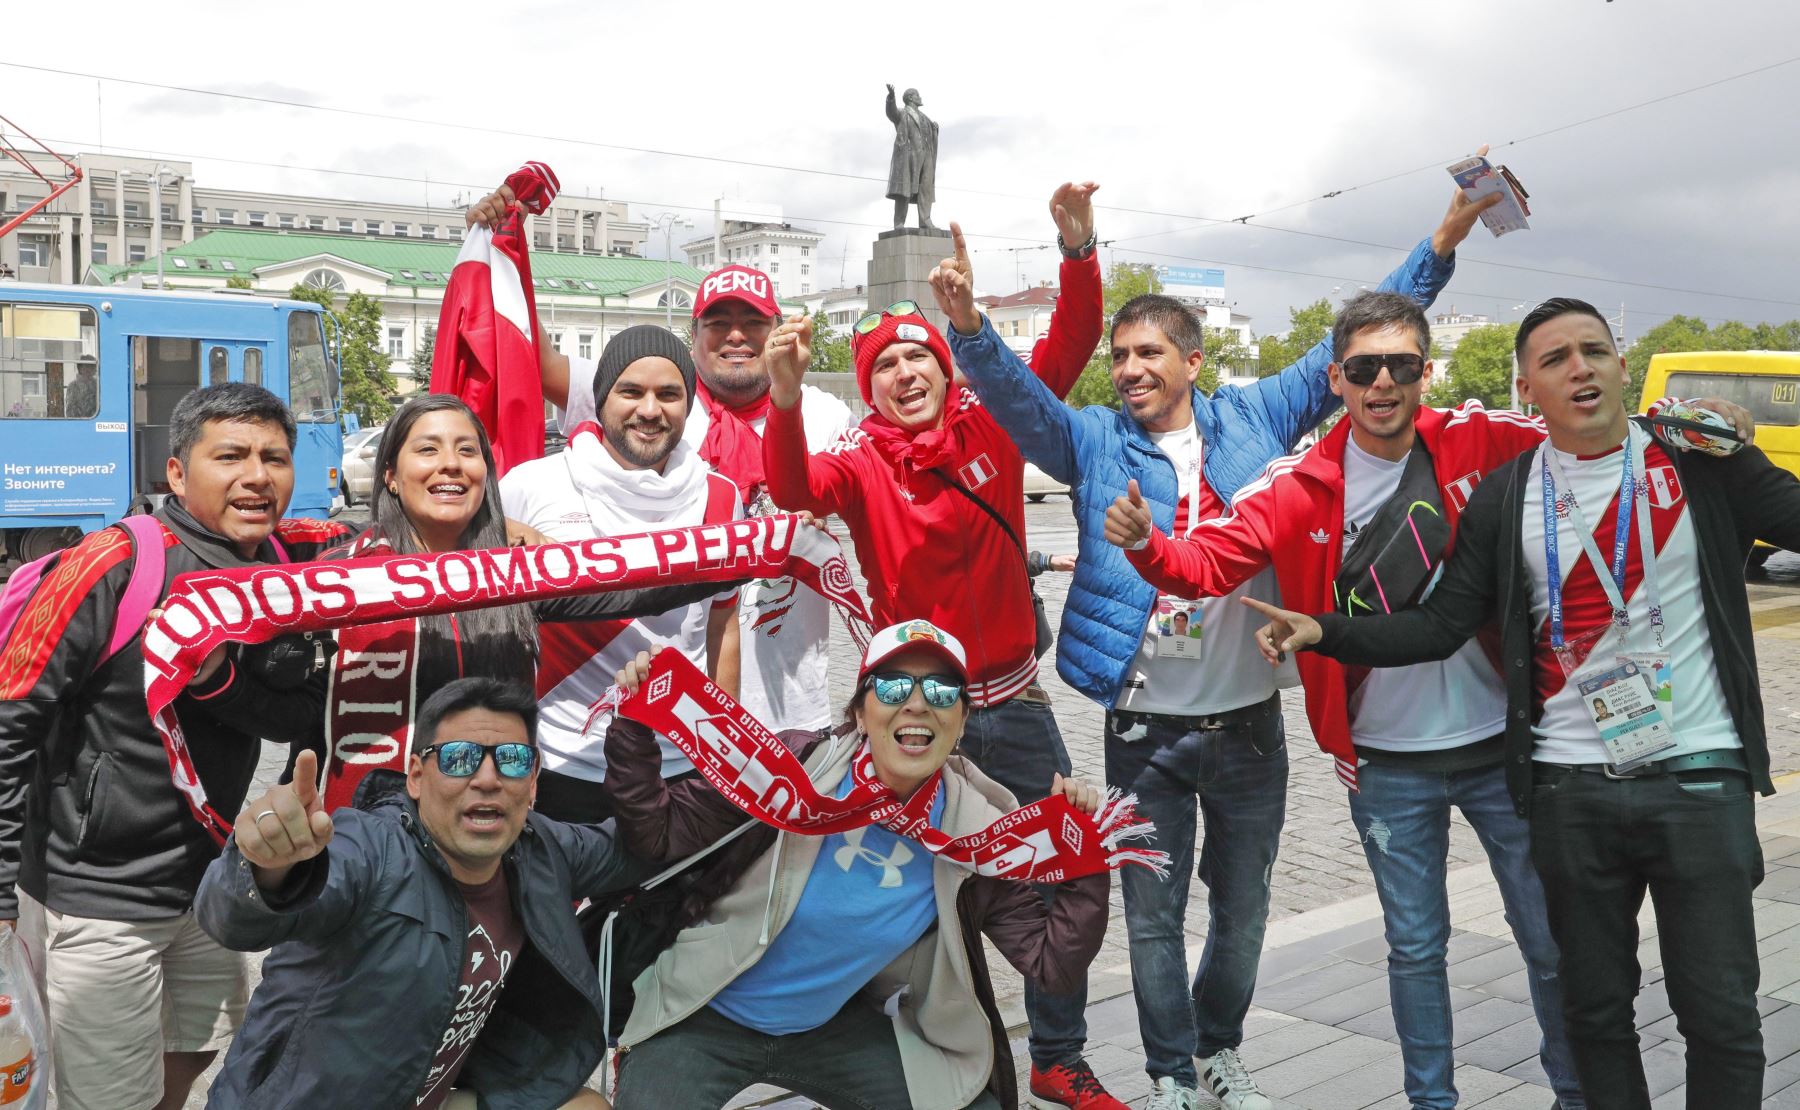 Los fanáticos de Peruanos caminan por la calle en Ekaterinburg, una de las ciudades anfitrionas de la Copa Mundial de la FIFA 2018, Rusia, el 21 de junio de 2018. Foto:EFE